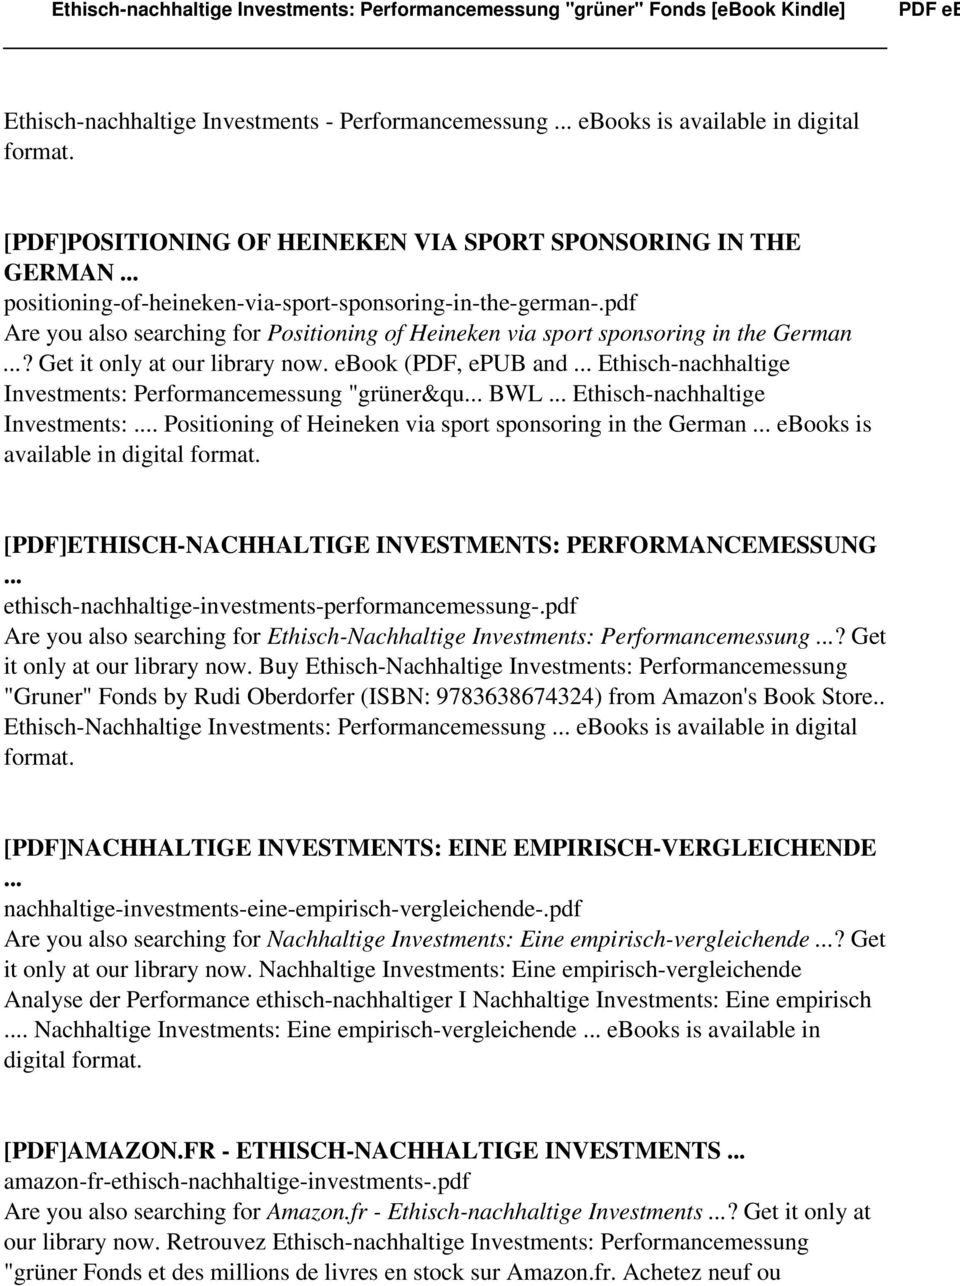 ebook (PDF, epub and Ethisch-nachhaltige Investments: Performancemessung "grüner&qu BWL Ethisch-nachhaltige Investments:.